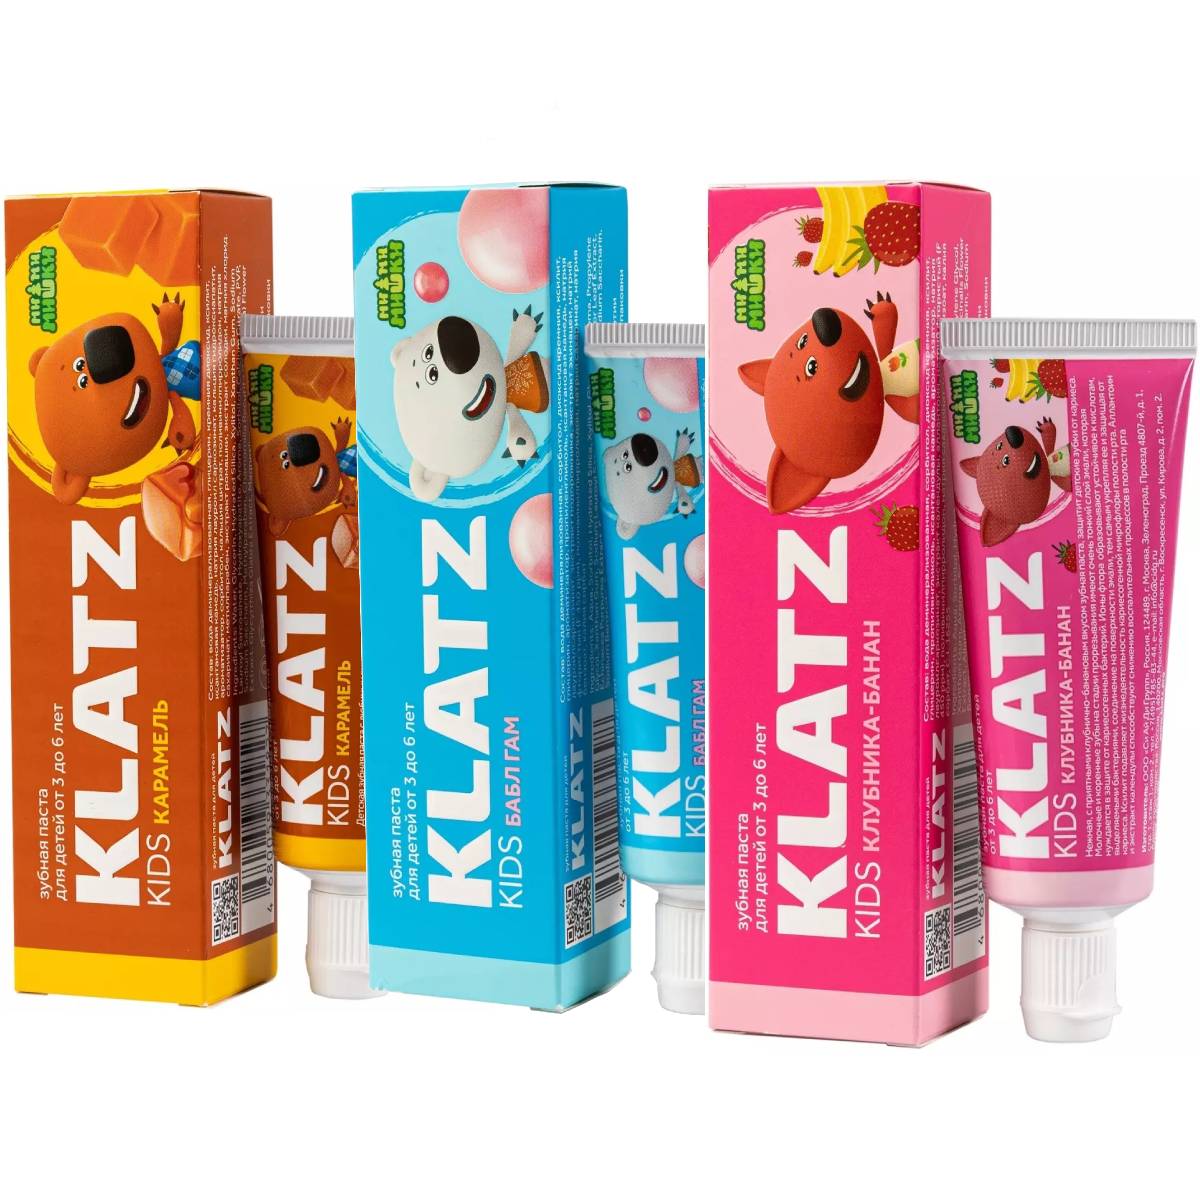 Klatz Набор детских зубных паст Ми-ми-мишки, 3 шт (Klatz, Ми-ми-мишки) очки солнечные ми ми мишки s m004